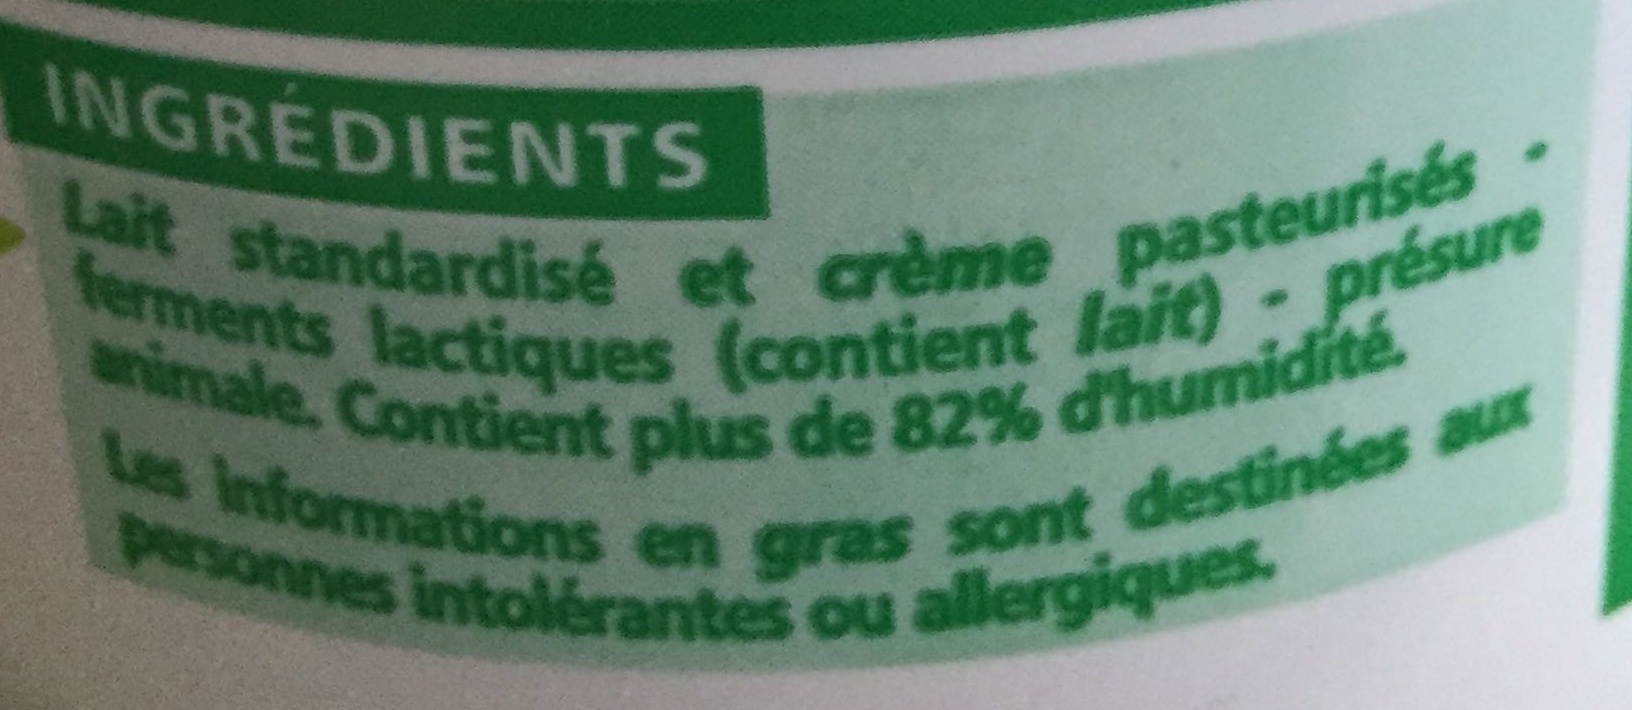 Faisselle moulée à la main 6% de matières grasses sur produit fini - Ingredients - fr